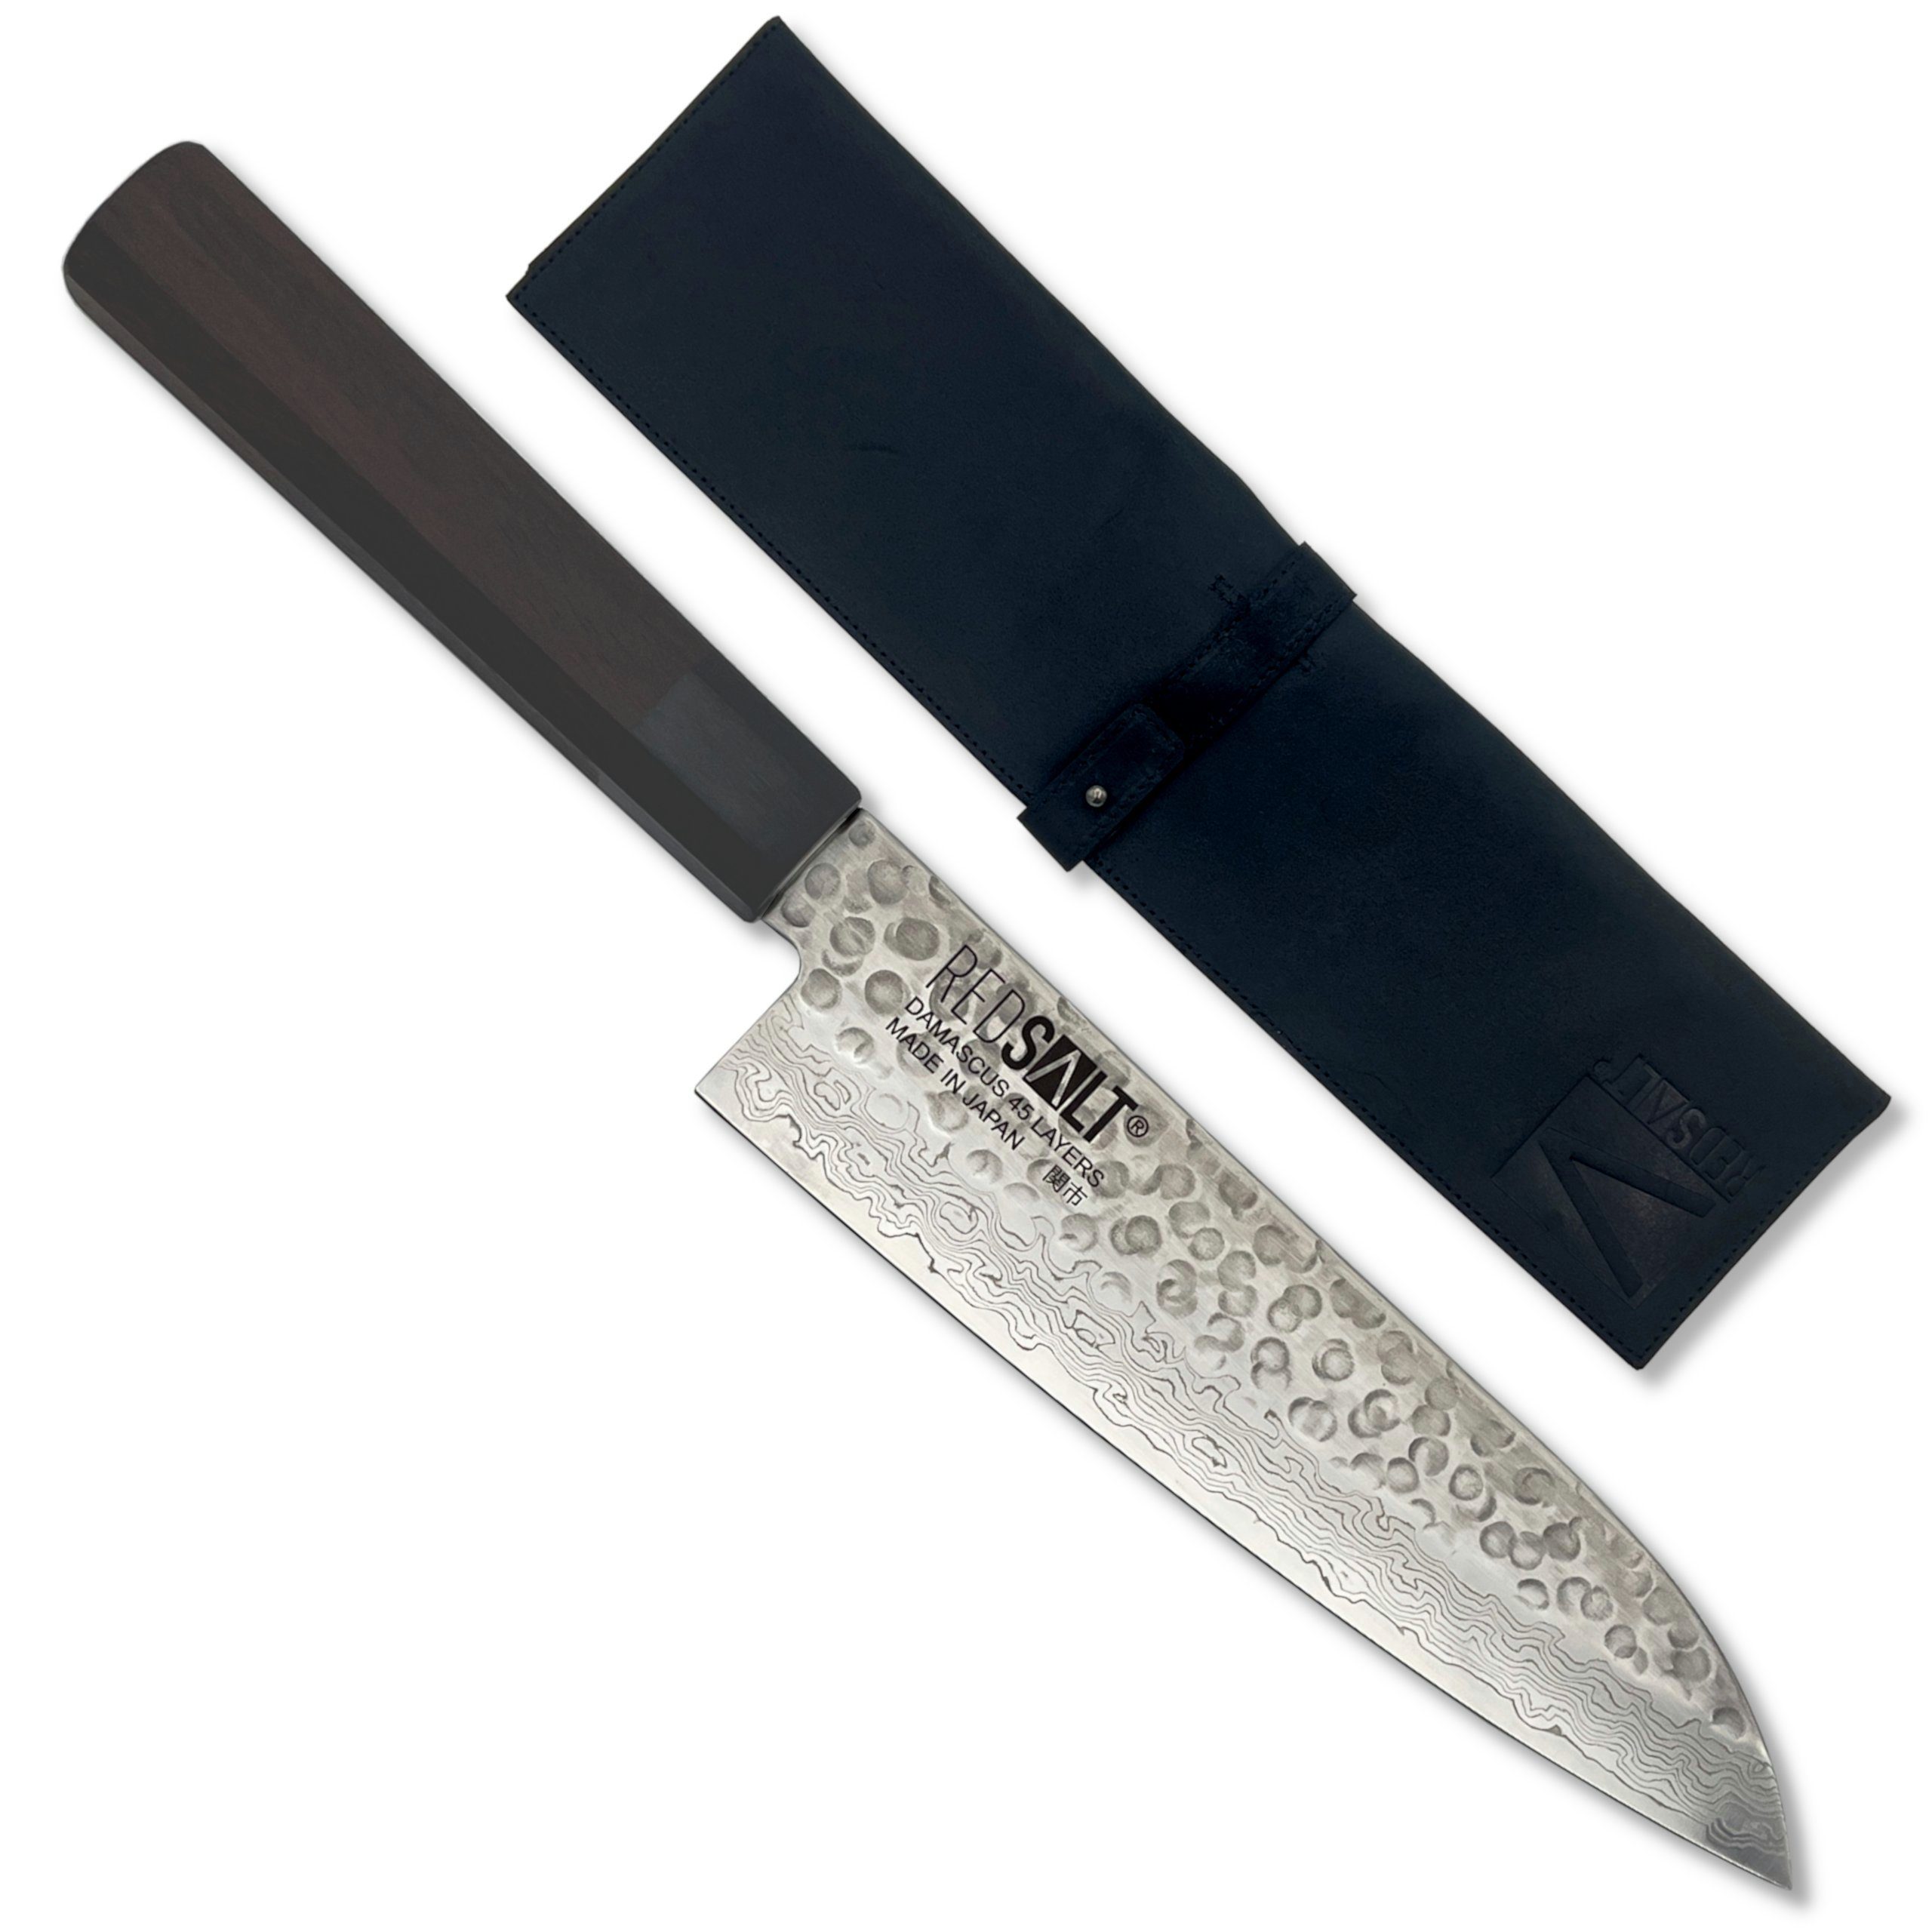 [Super-Sonderpreis] REDSALT® Damastmesser SANTOKU 18cm Klingenschutz, in Japan handgefertigt, Ledertasche Küchenmesser mit Profi & Made